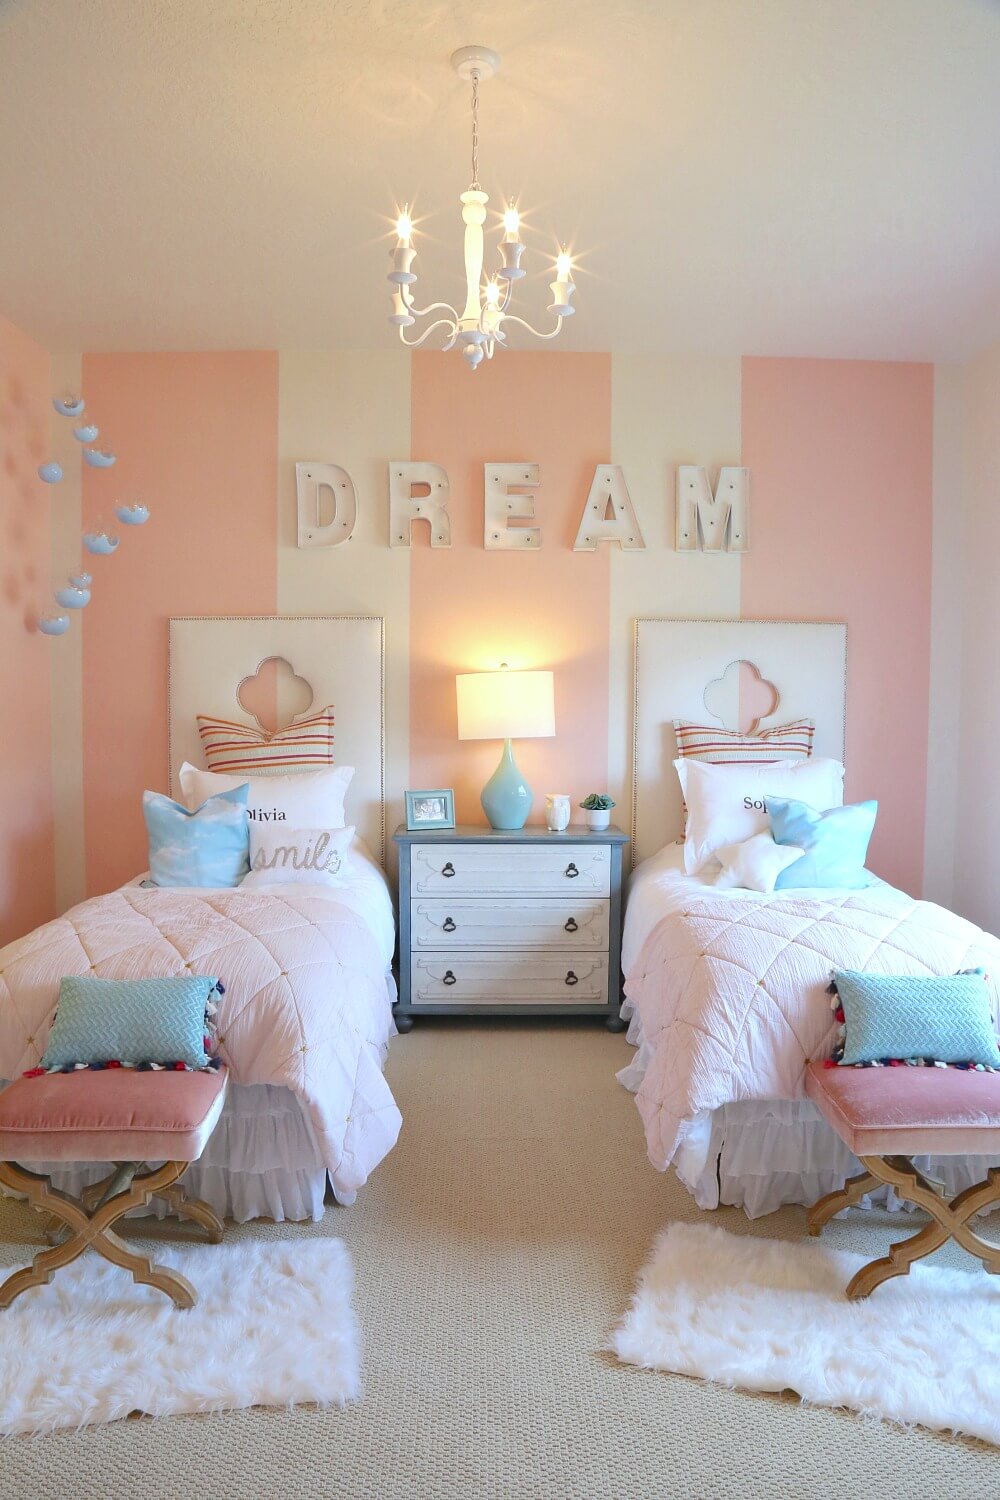 Bởi vì màu hồng không chỉ là màu sắc yêu thích của nhiều bé gái, mà còn mang lại sự ấm áp và ngọt ngào cho không gian phòng ngủ bé. Bạn cũng có thể kết hợp màu hồng với những màu khác để tạo nên một phòng ngủ bé gái đầy sáng tạo và trẻ trung.